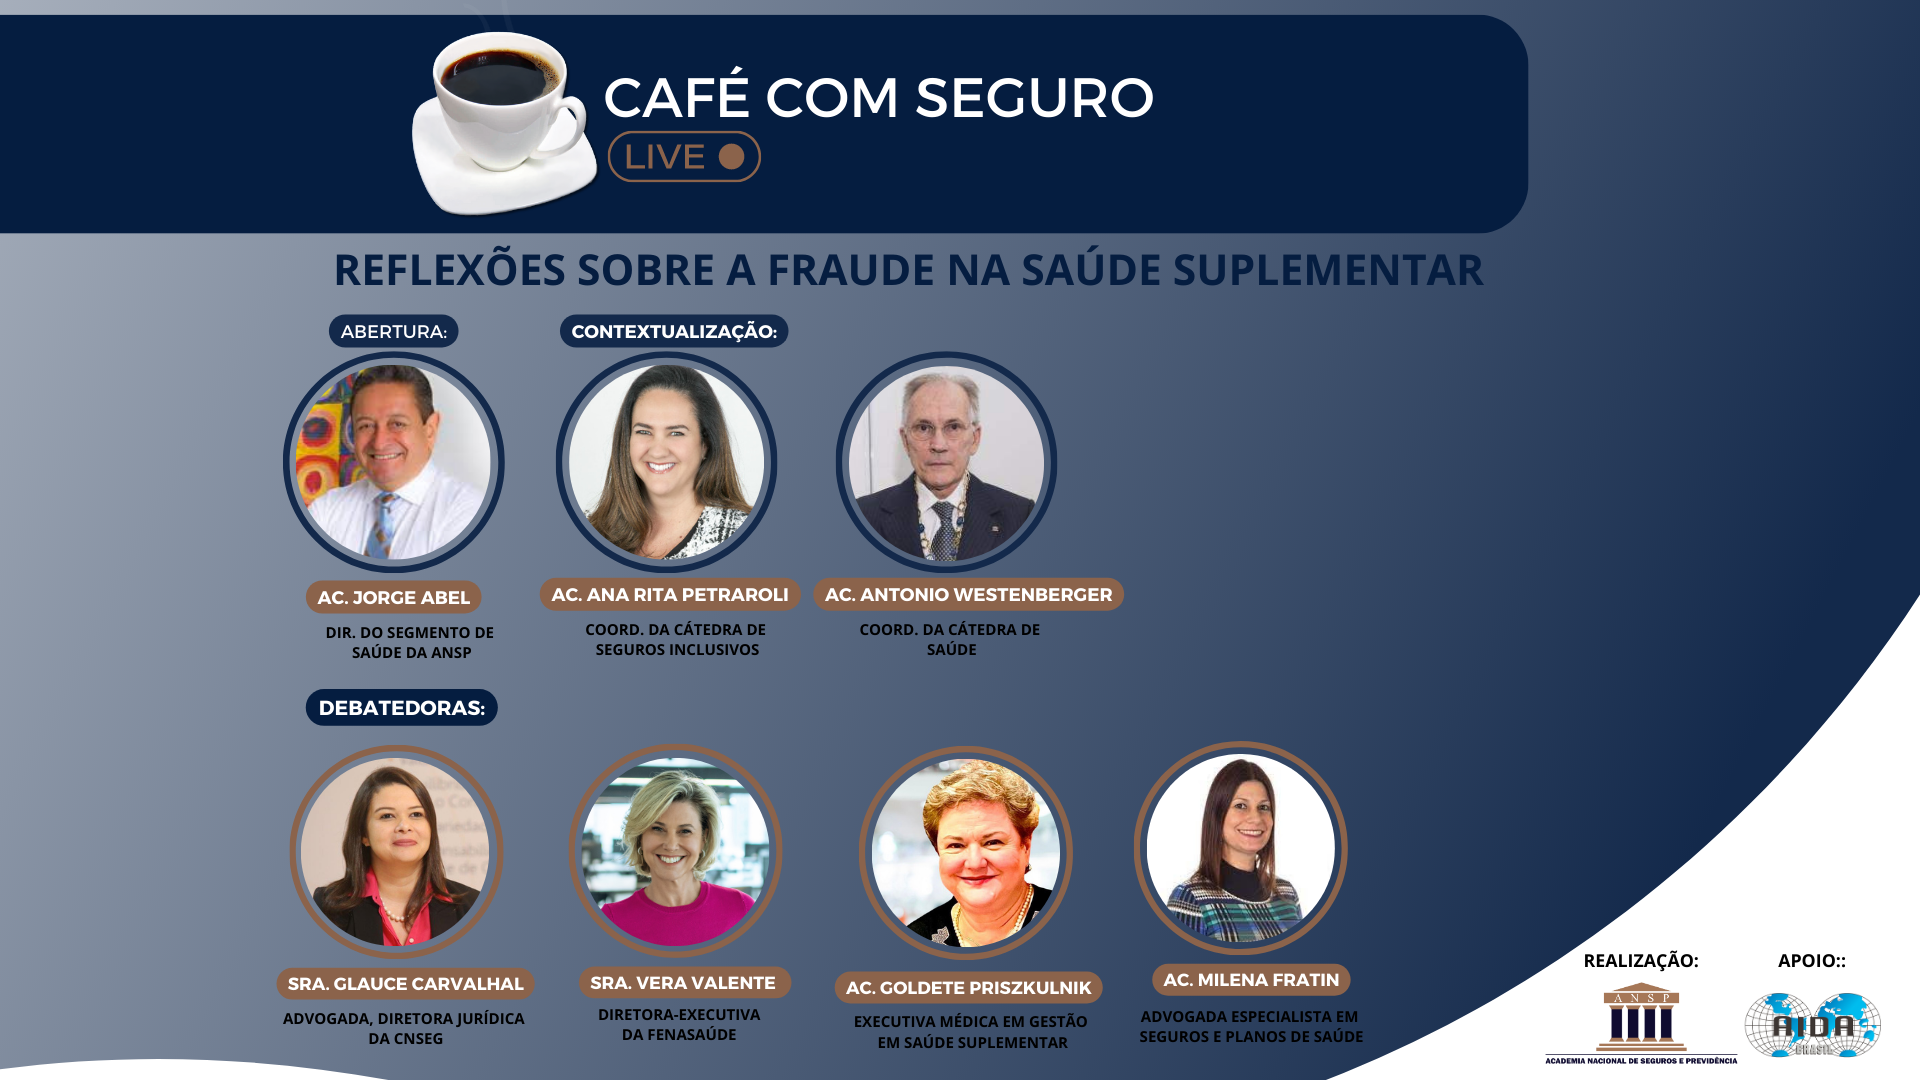 Café com Seguro live l REFLEXÕES SOBRE A FRAUDE NA SAÚDE SUPLEMENTAR